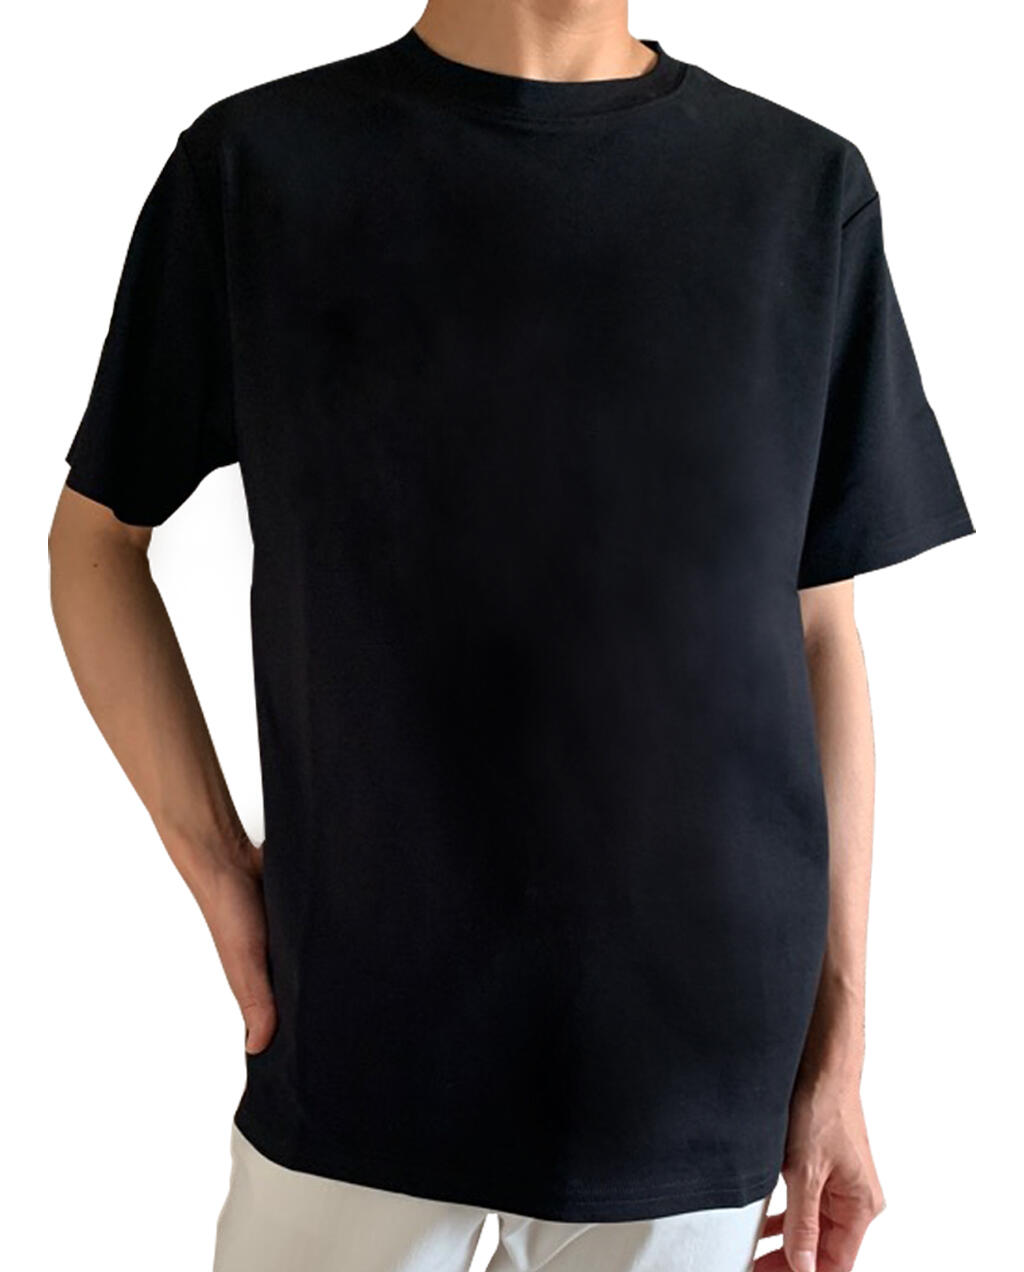 色褪せ知らずの黒tシャツ メンズ Items Restoration レストレーション Official Site